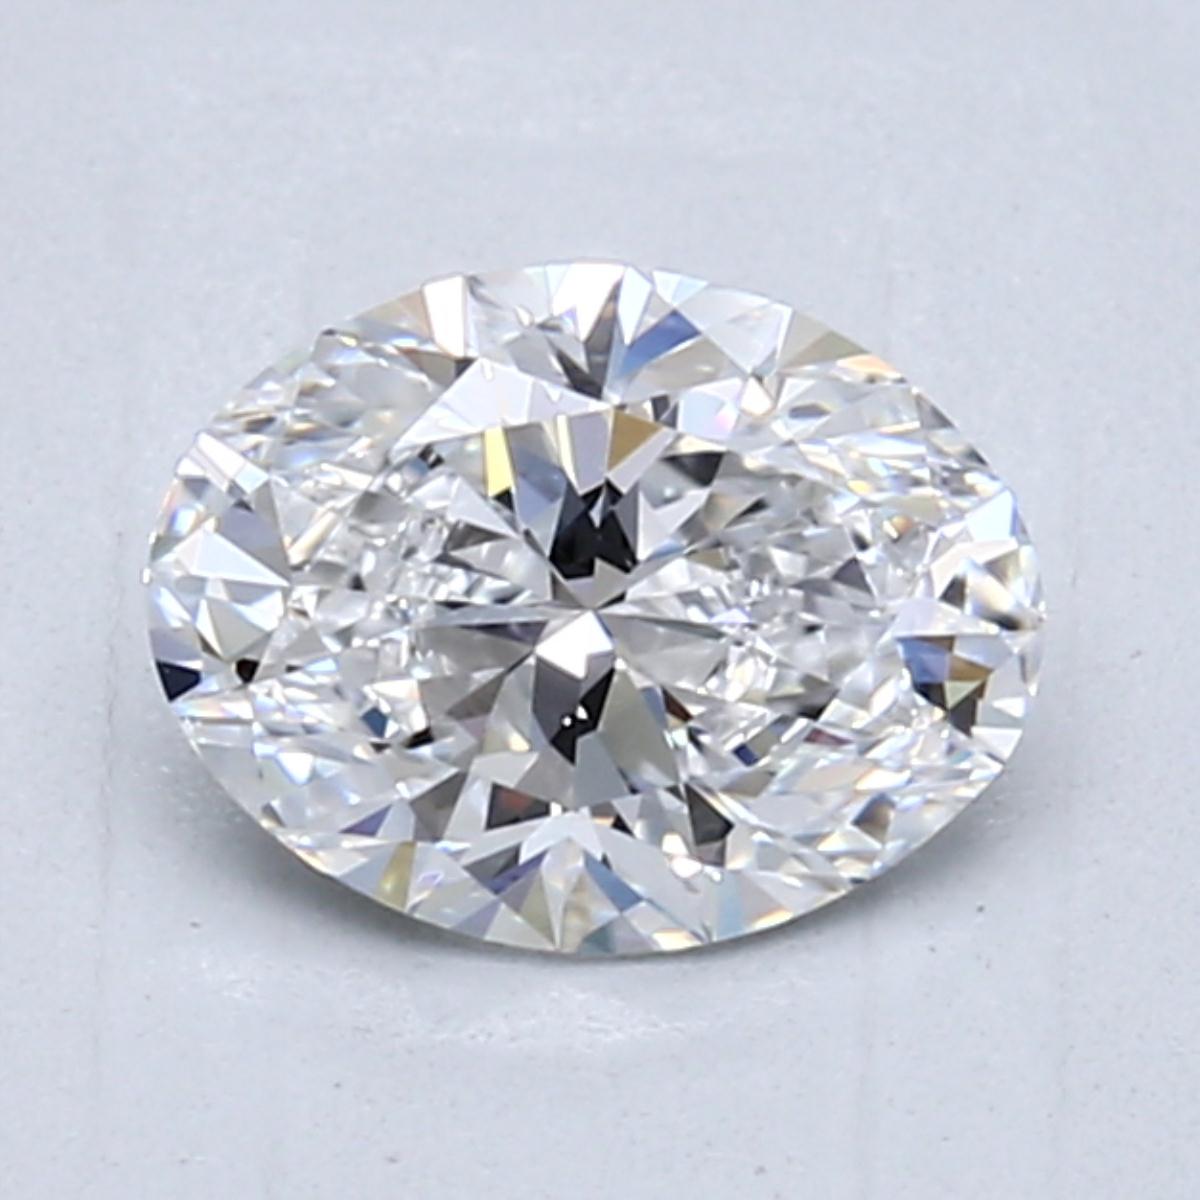 1.01-Carat Oval Cut Diamond